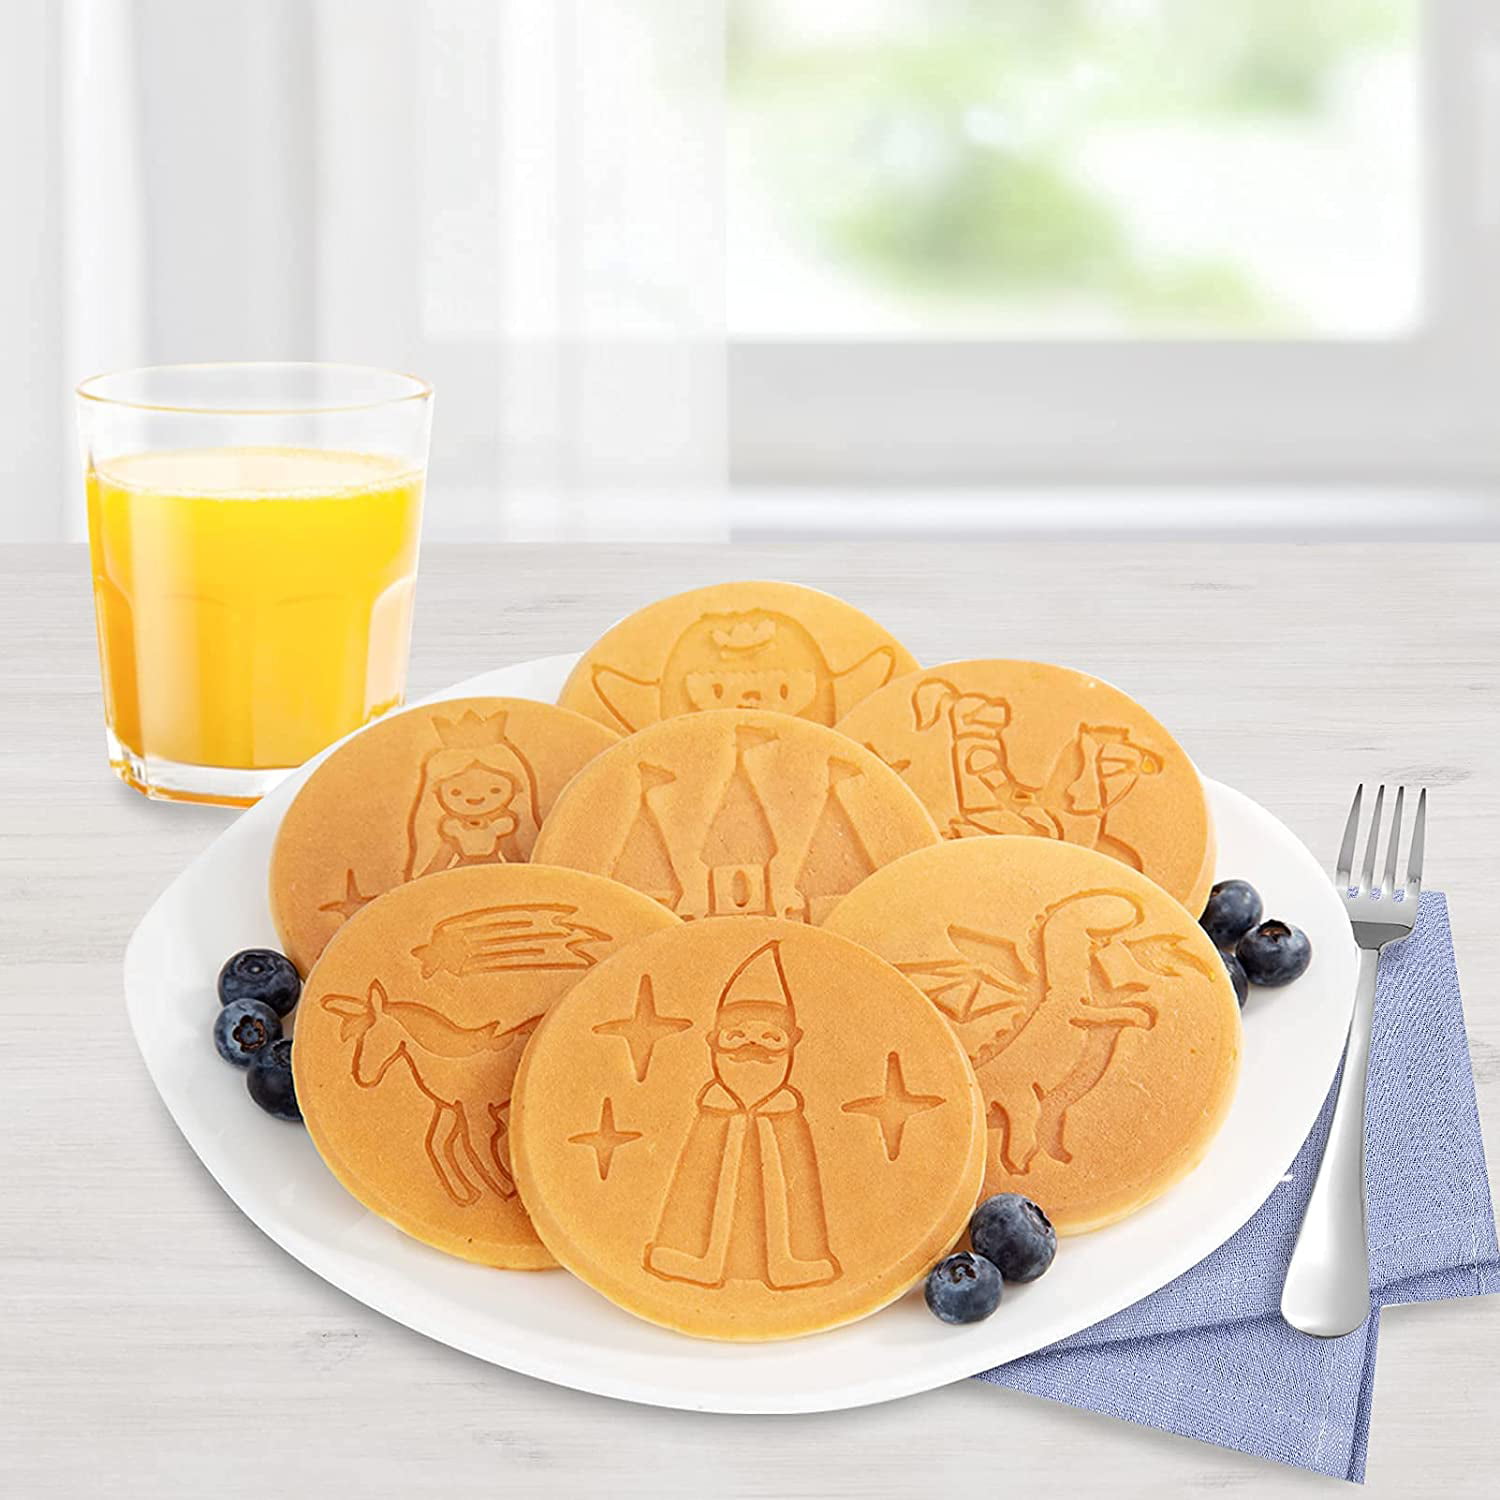 Houselin Pancake Pans For Kids,Pancake Shapes Pan,Mini Pancakes Maker  Nonstick Pancake Griddle 4 Hole Pancake Mold For Breakfast